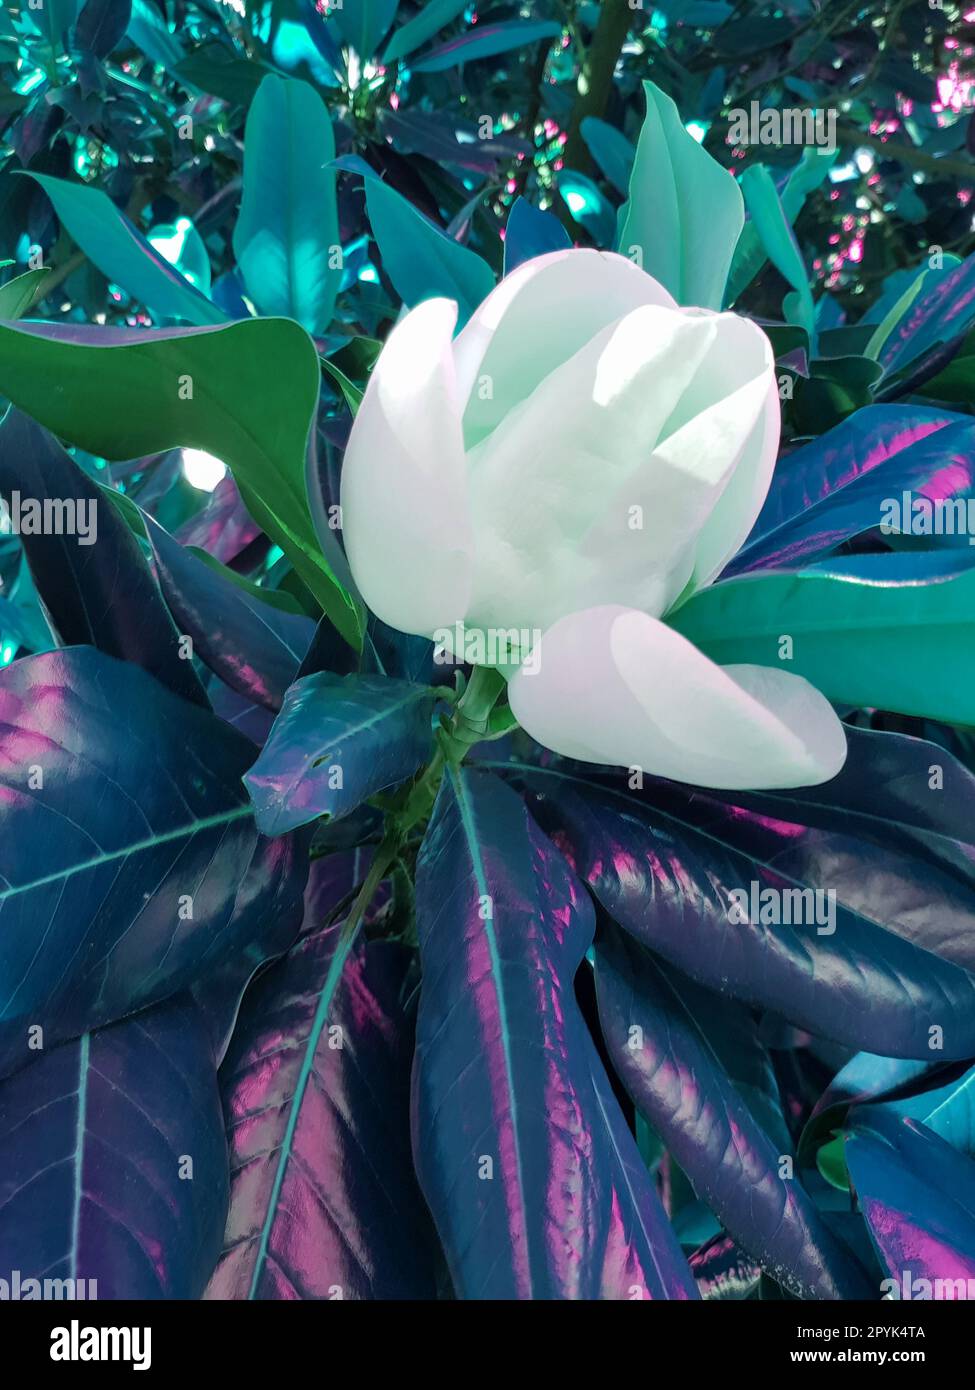 Di colore verde, un grande fiore bianco-cremoso della magnolia meridionale è circondato da foglie verdi lucide. Primo piano petalo bianco, verticale Foto Stock